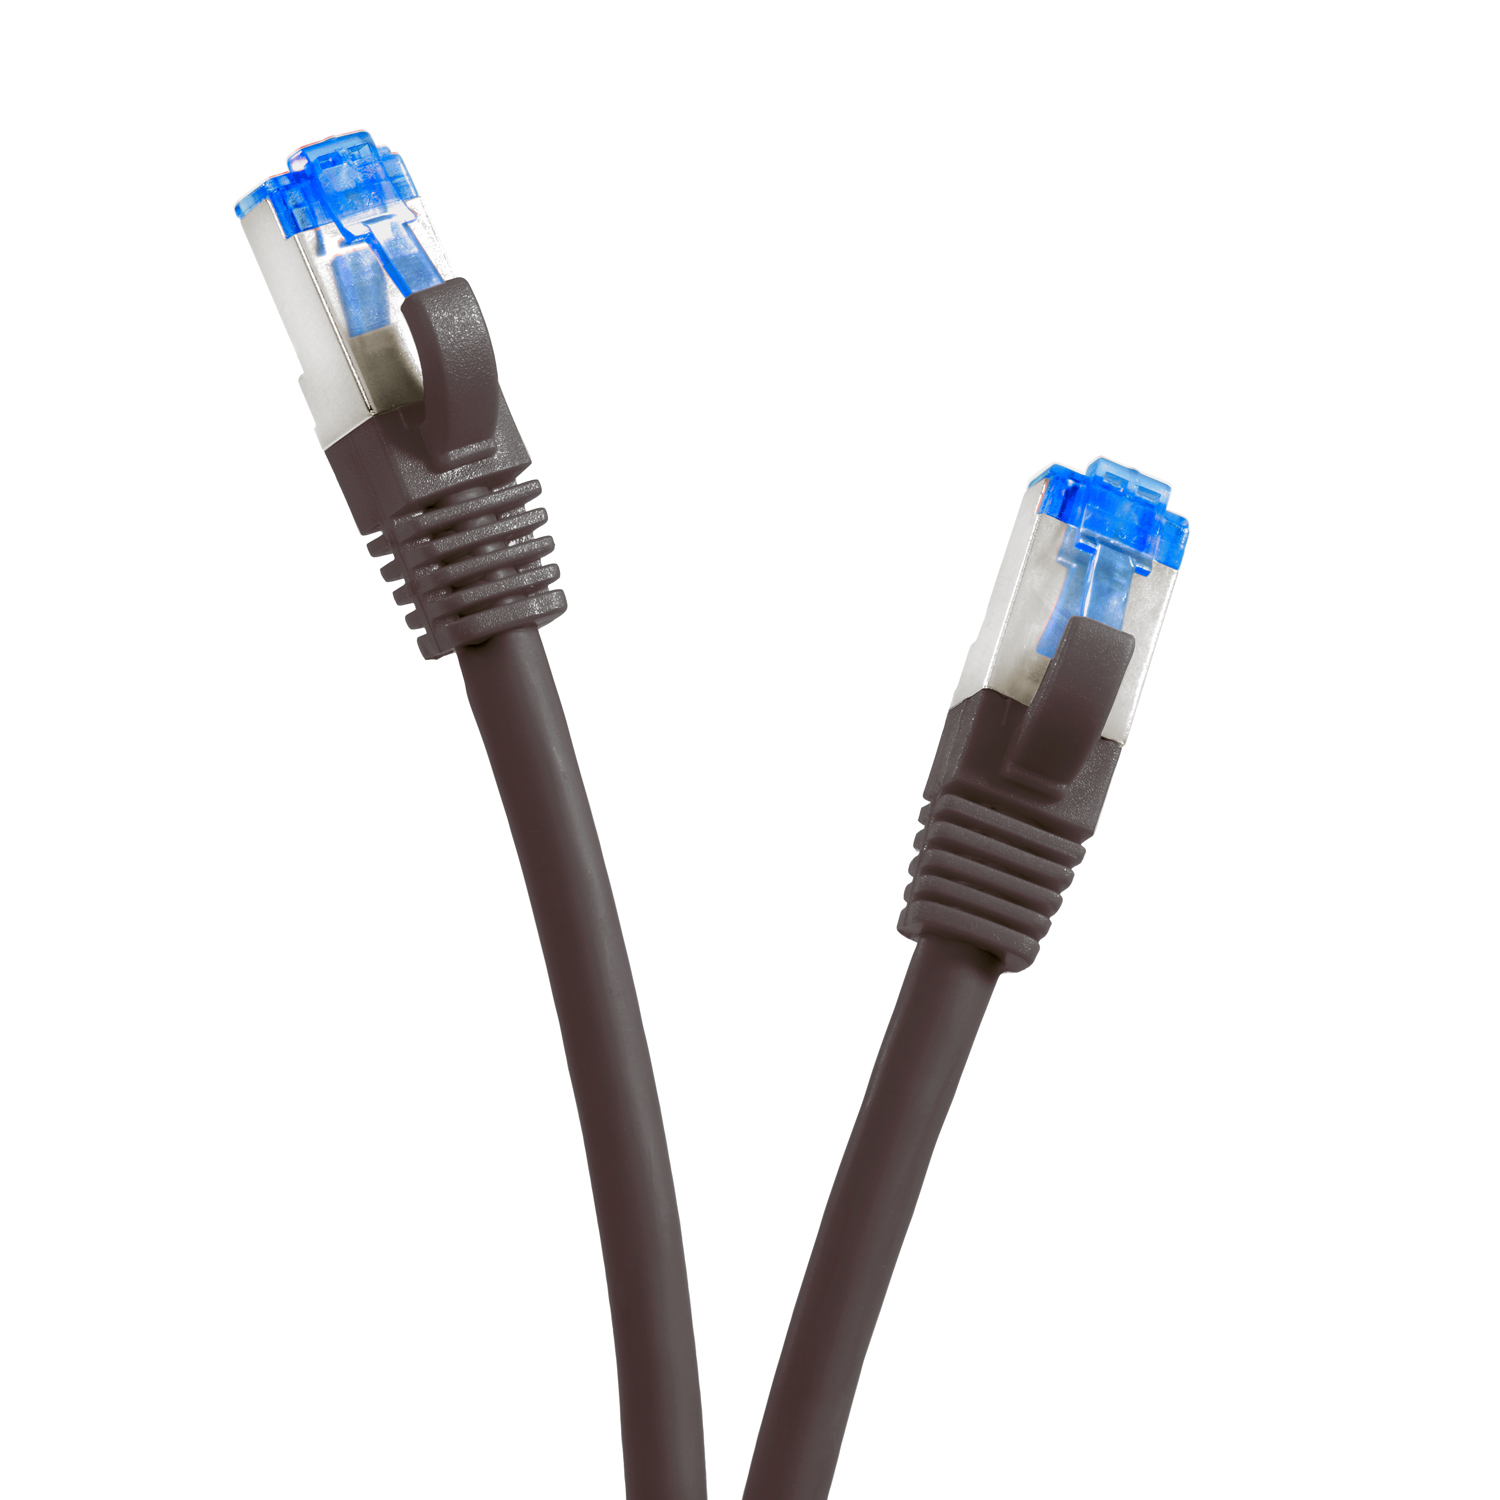 Netzwerkkabel, 5er TPFNET 10GBit, / Pack Netzwerkkabel S/FTP Patchkabel schwarz, 1,5 1,5m m